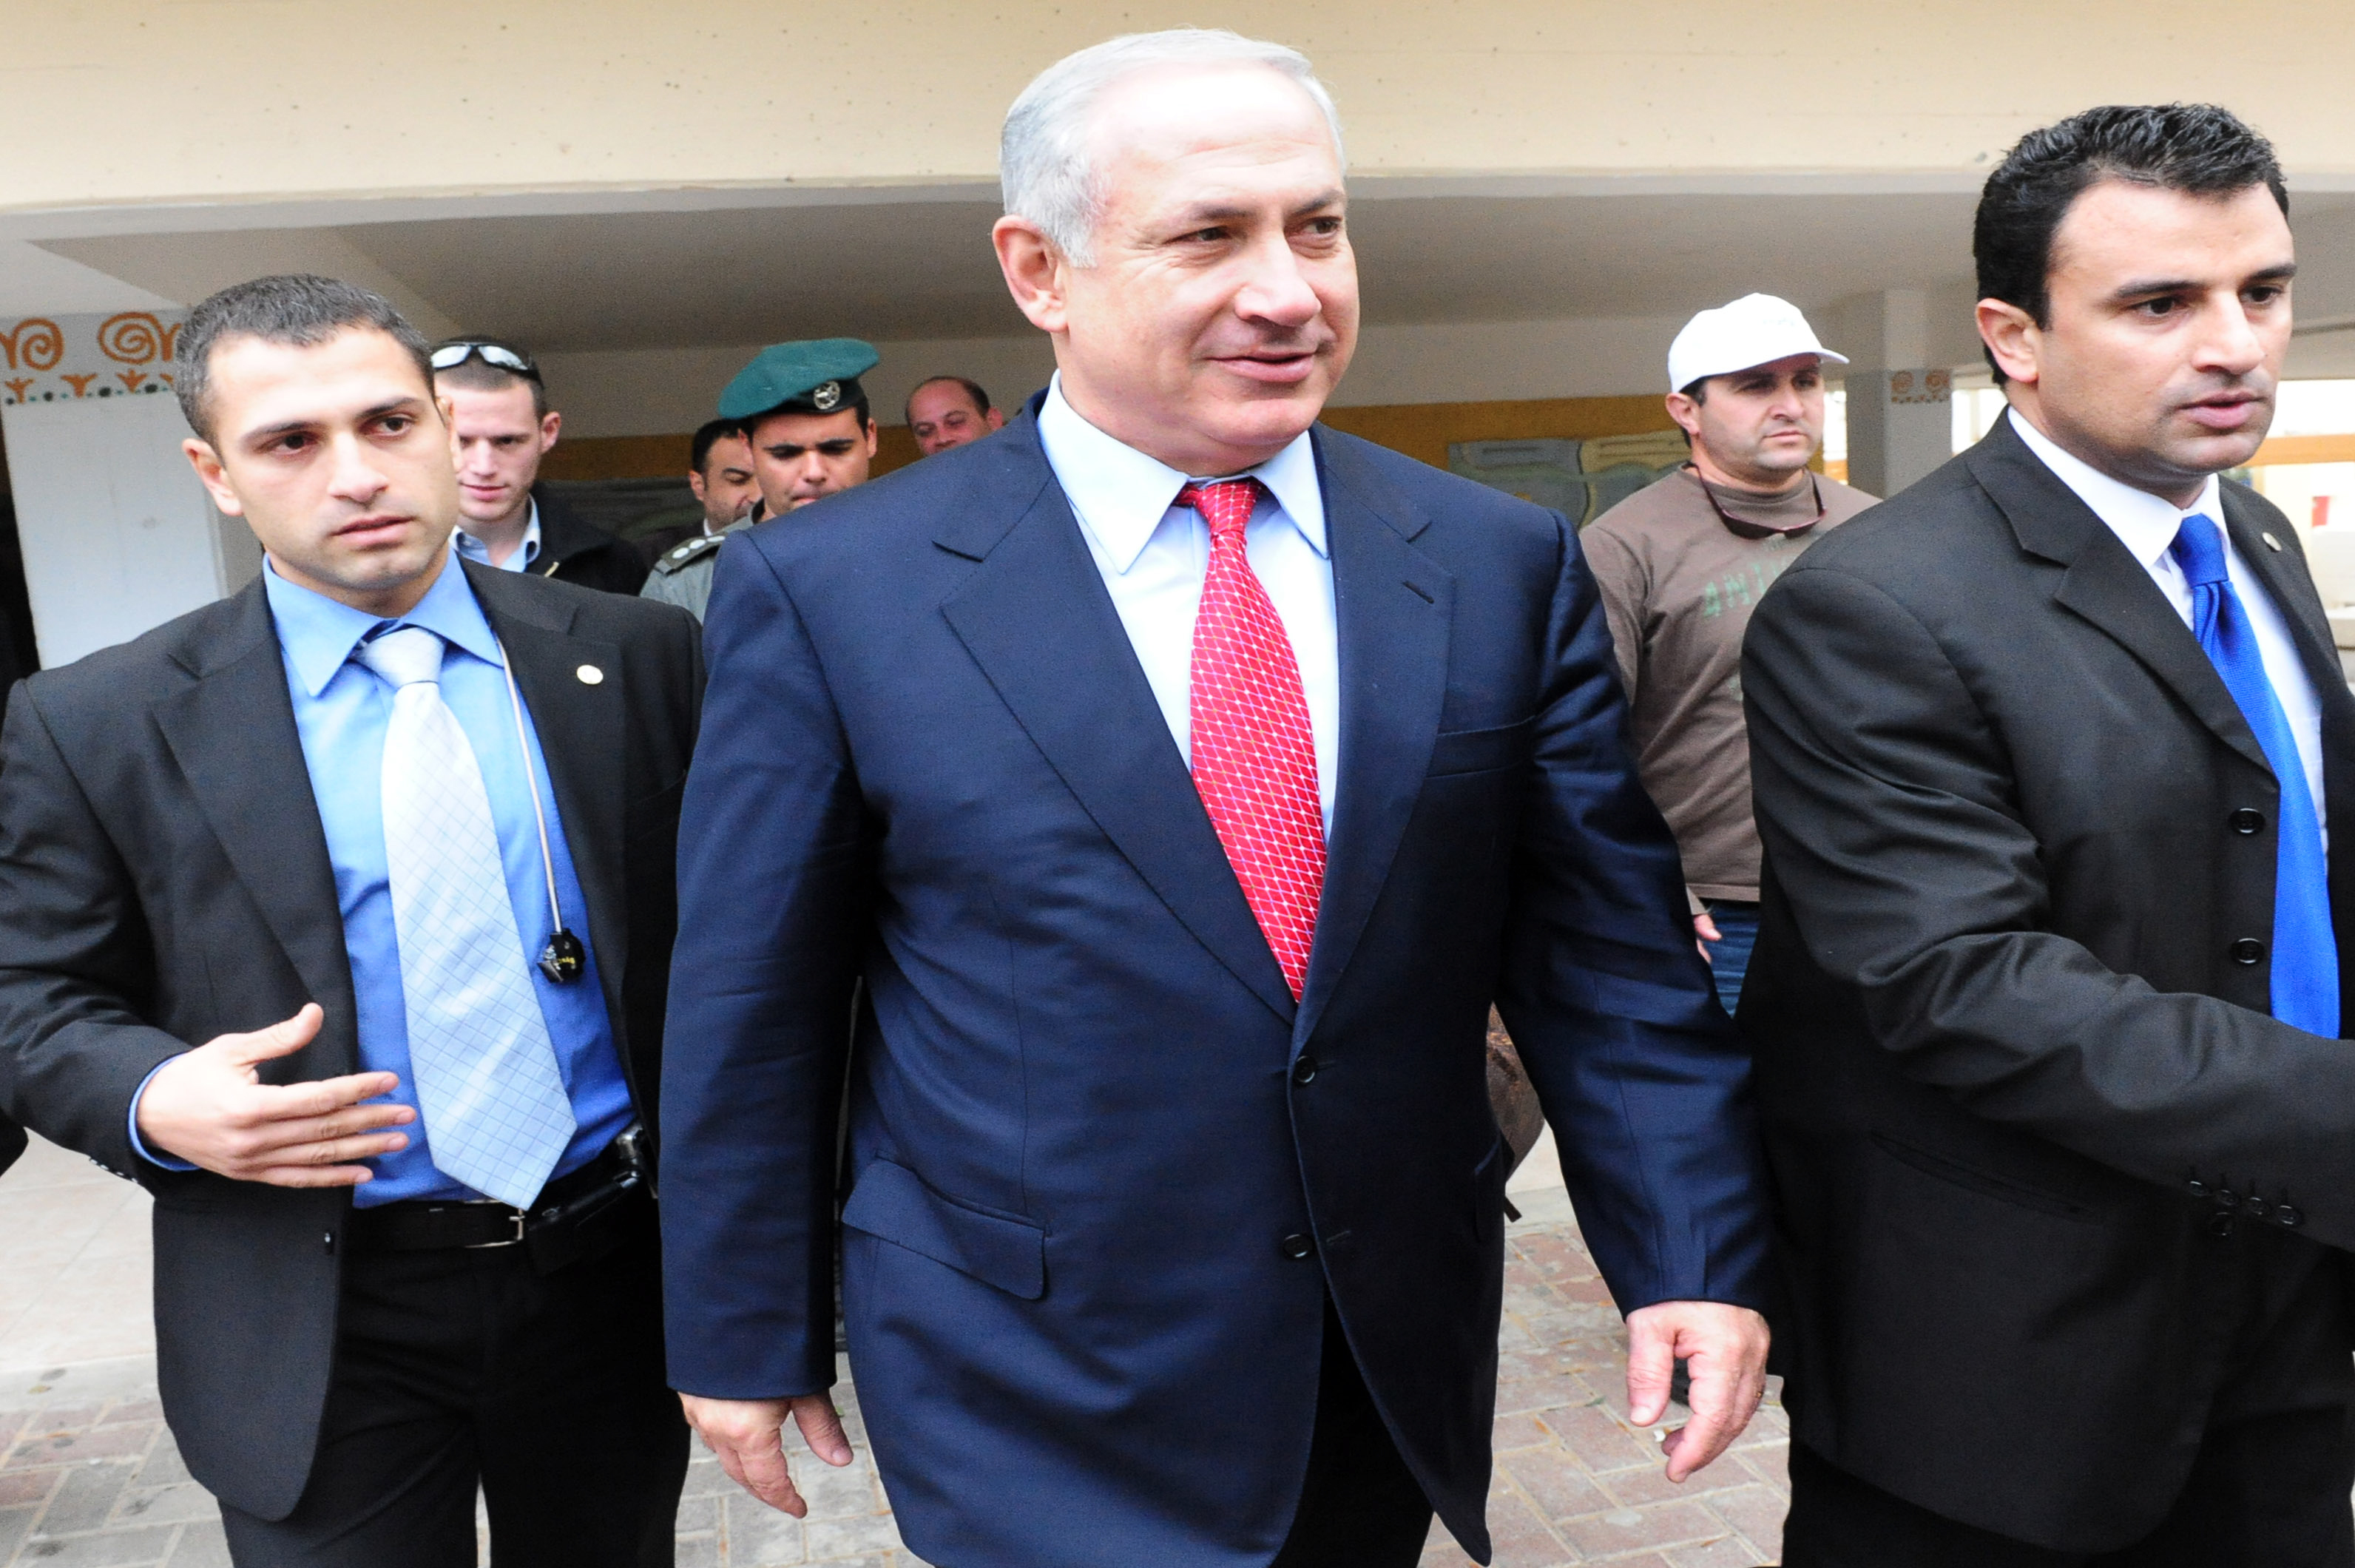 Netanyahu Threatens War In Speech to Congress